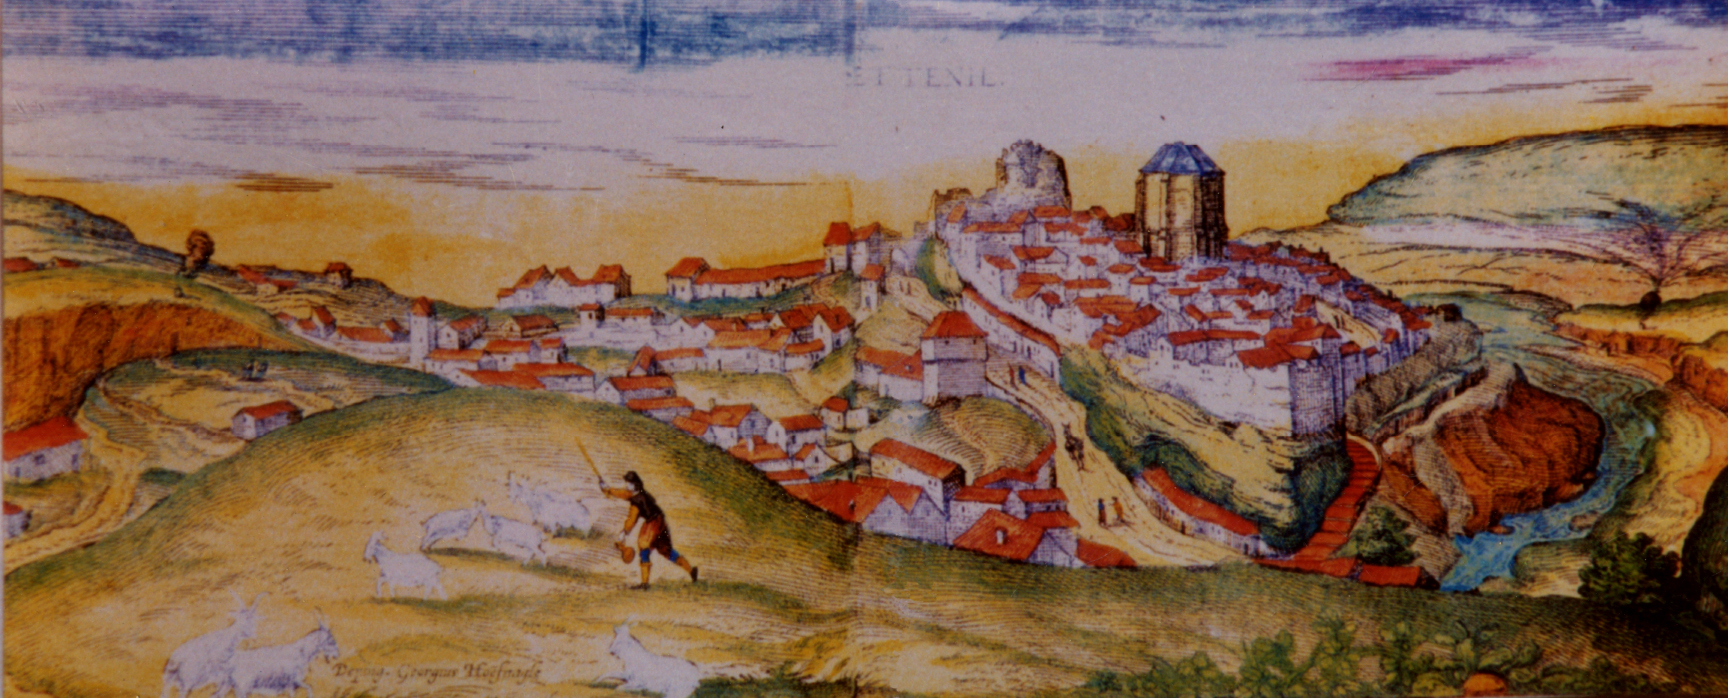 Setenil aparece en un dibujo histórico realizado en 1.564 por Georgius Hoefnagle, que se publicó en 1581 en Colonia en el tercer volumen del monumental ‘‘Civitates Orbis Terrarum’ (“Ciudades más importantes del Mundo”), el primer atlas del mundo moderno.